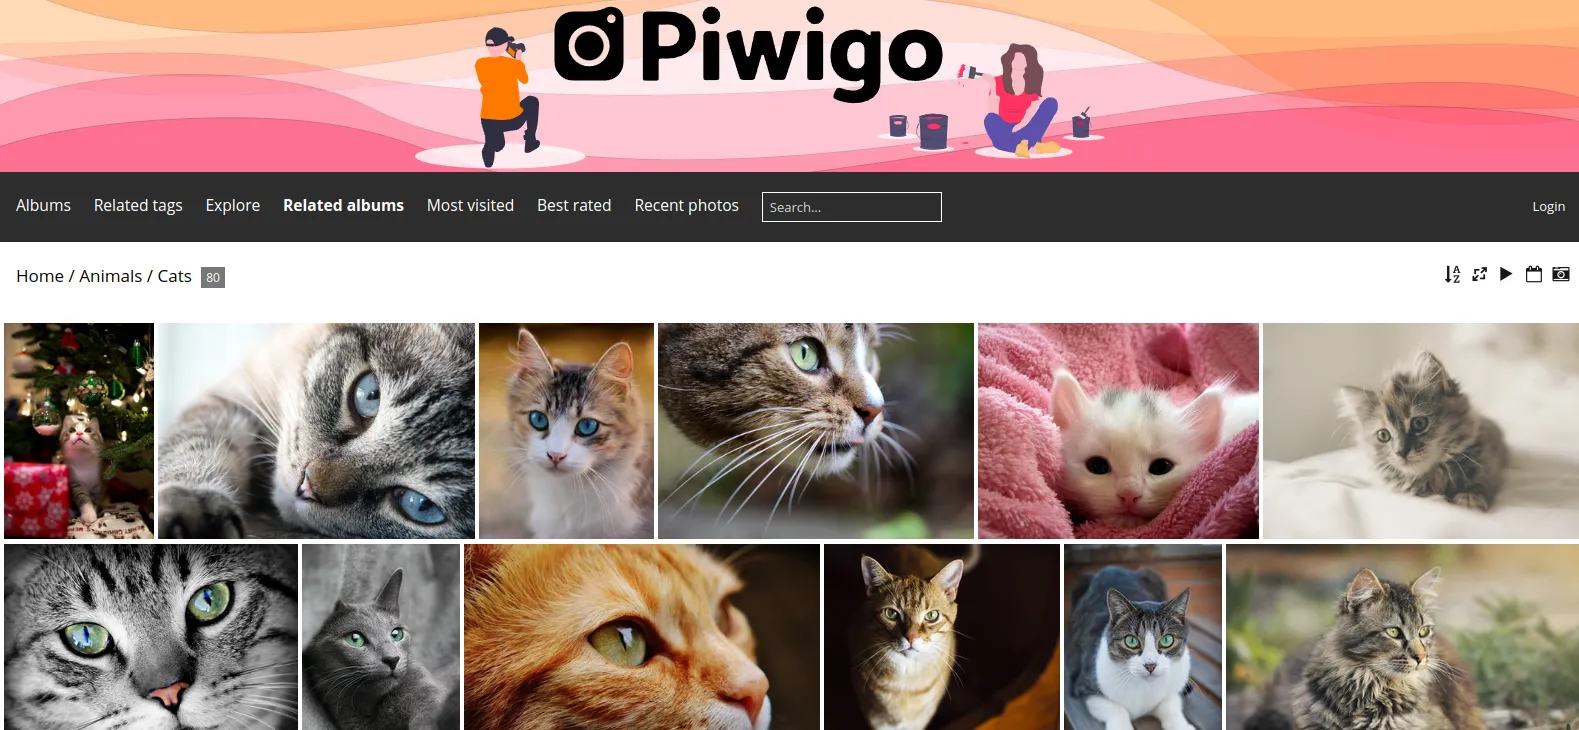 Gallery of photos of the Piwigo server program